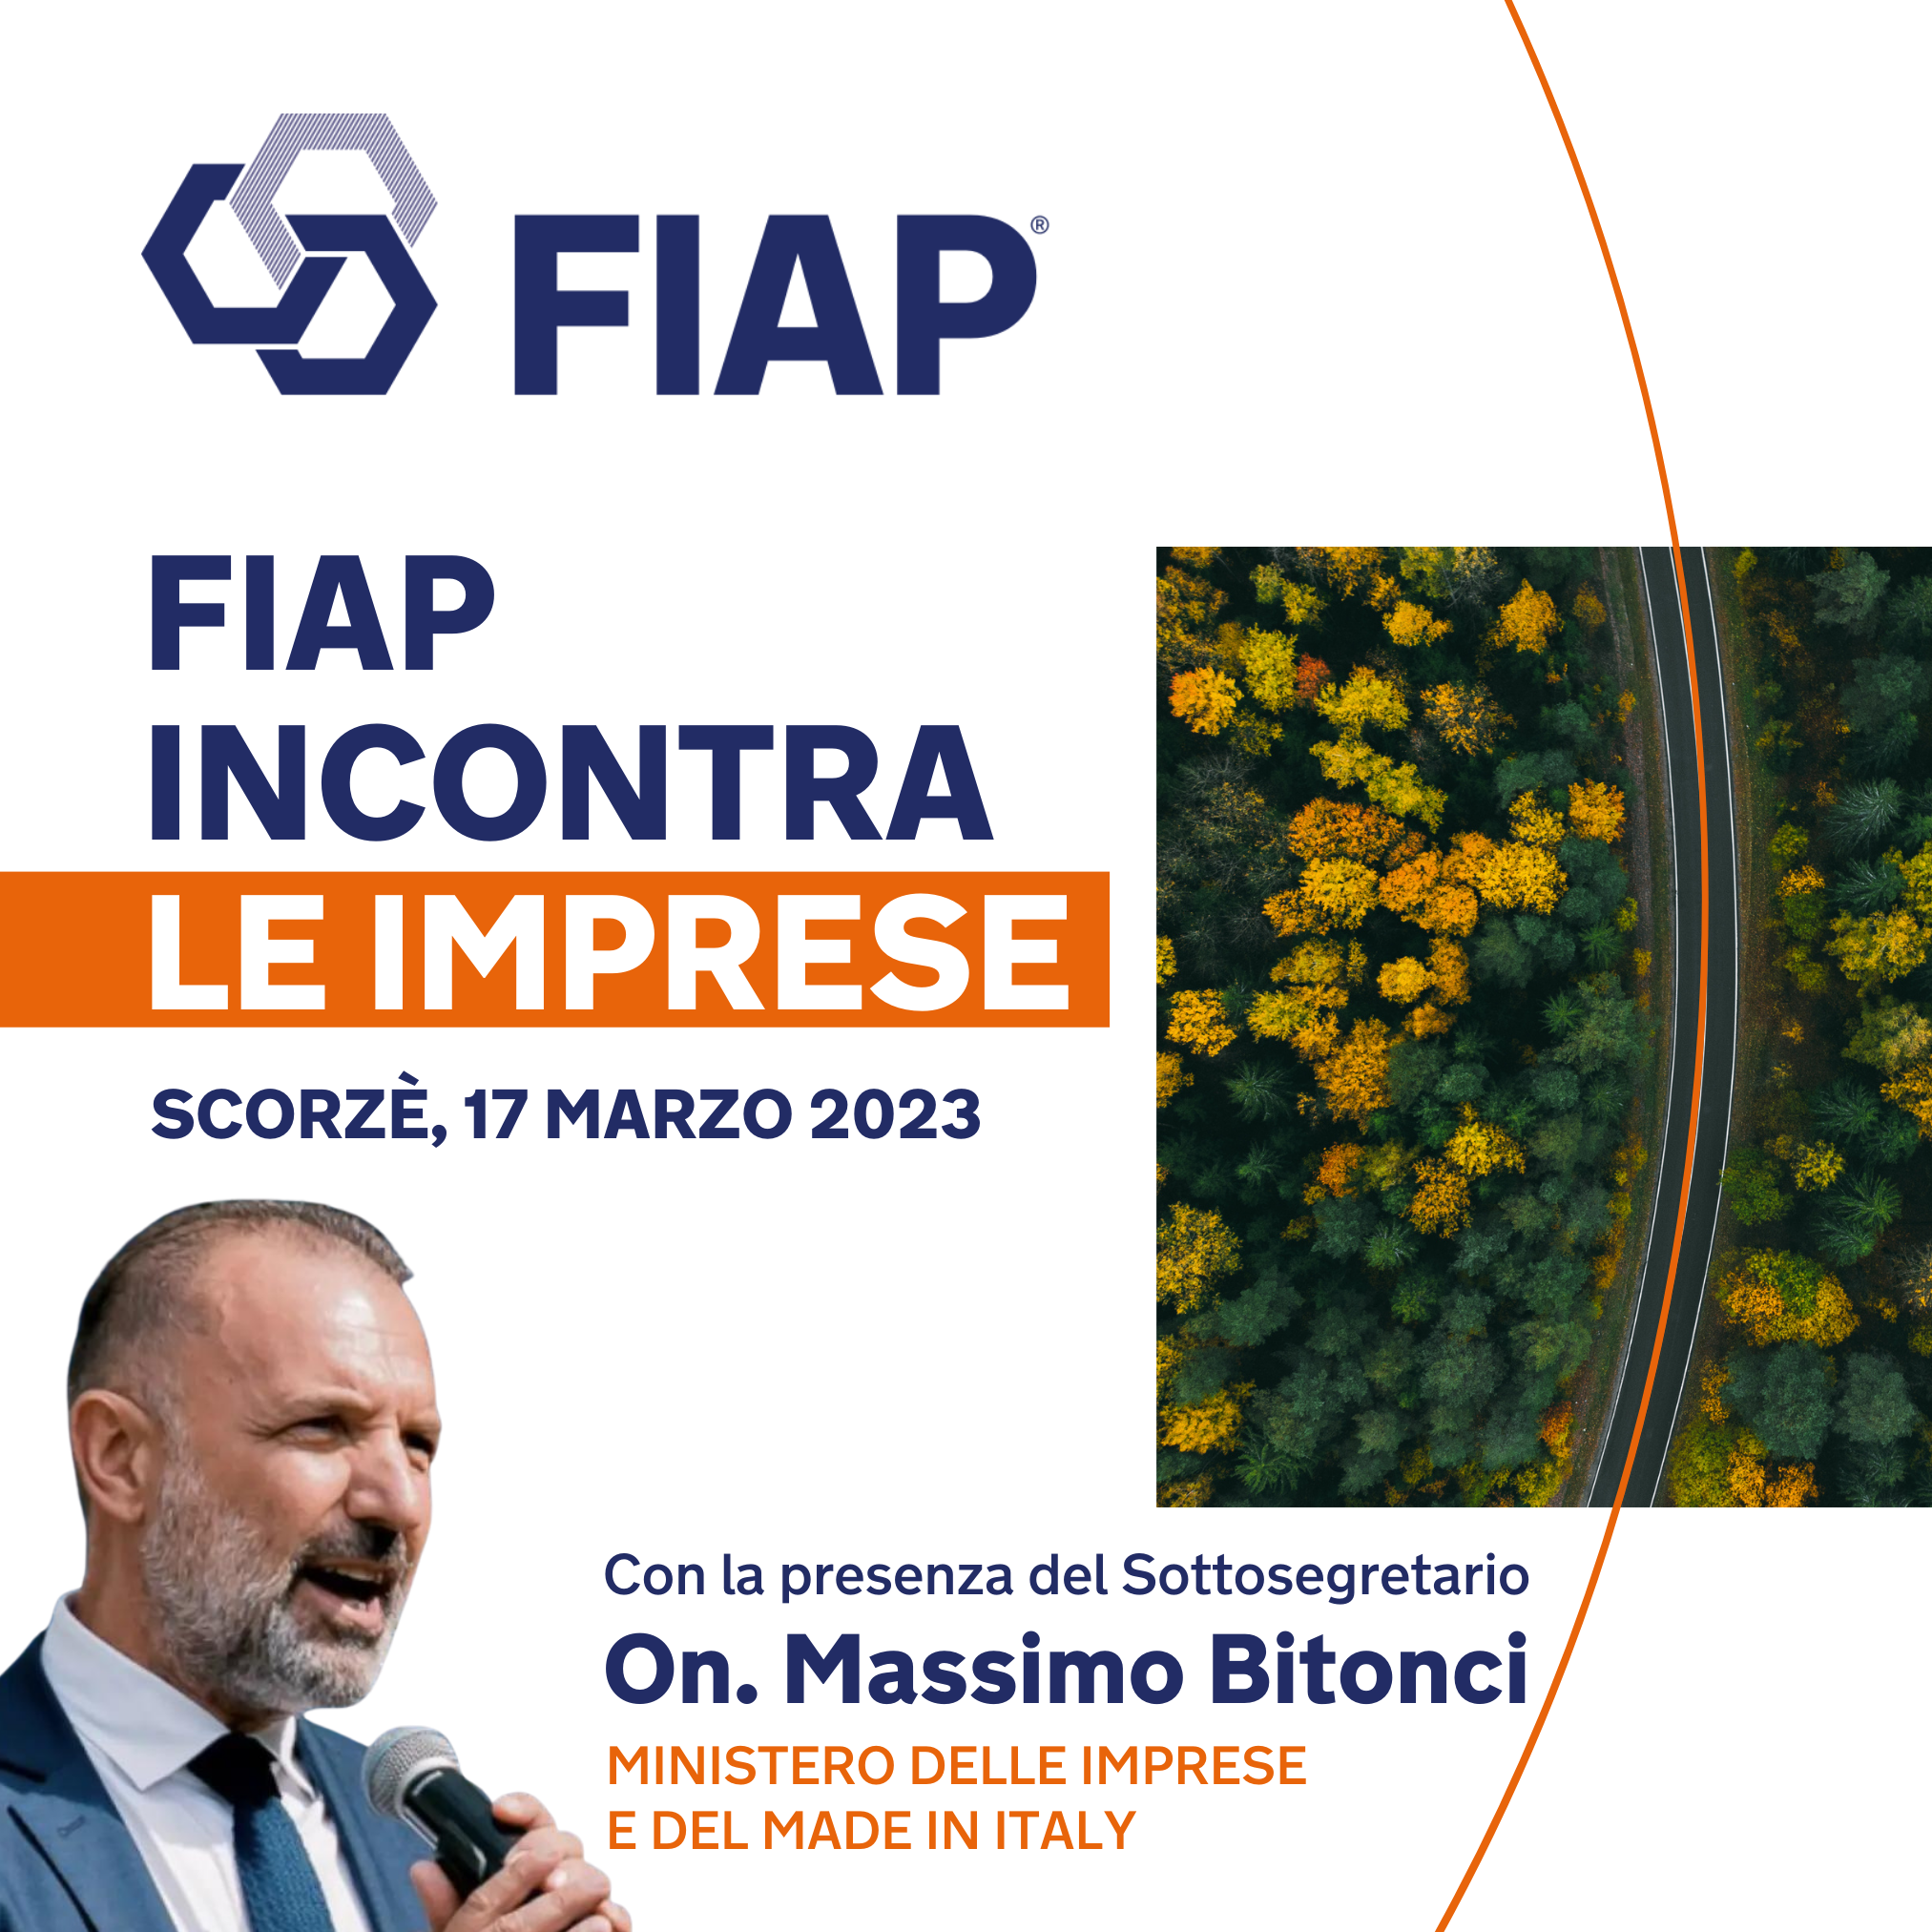 Corso Corso online - FIAP incontra Le imprese con On. Massimo Bitonci 17 Marzo 2023